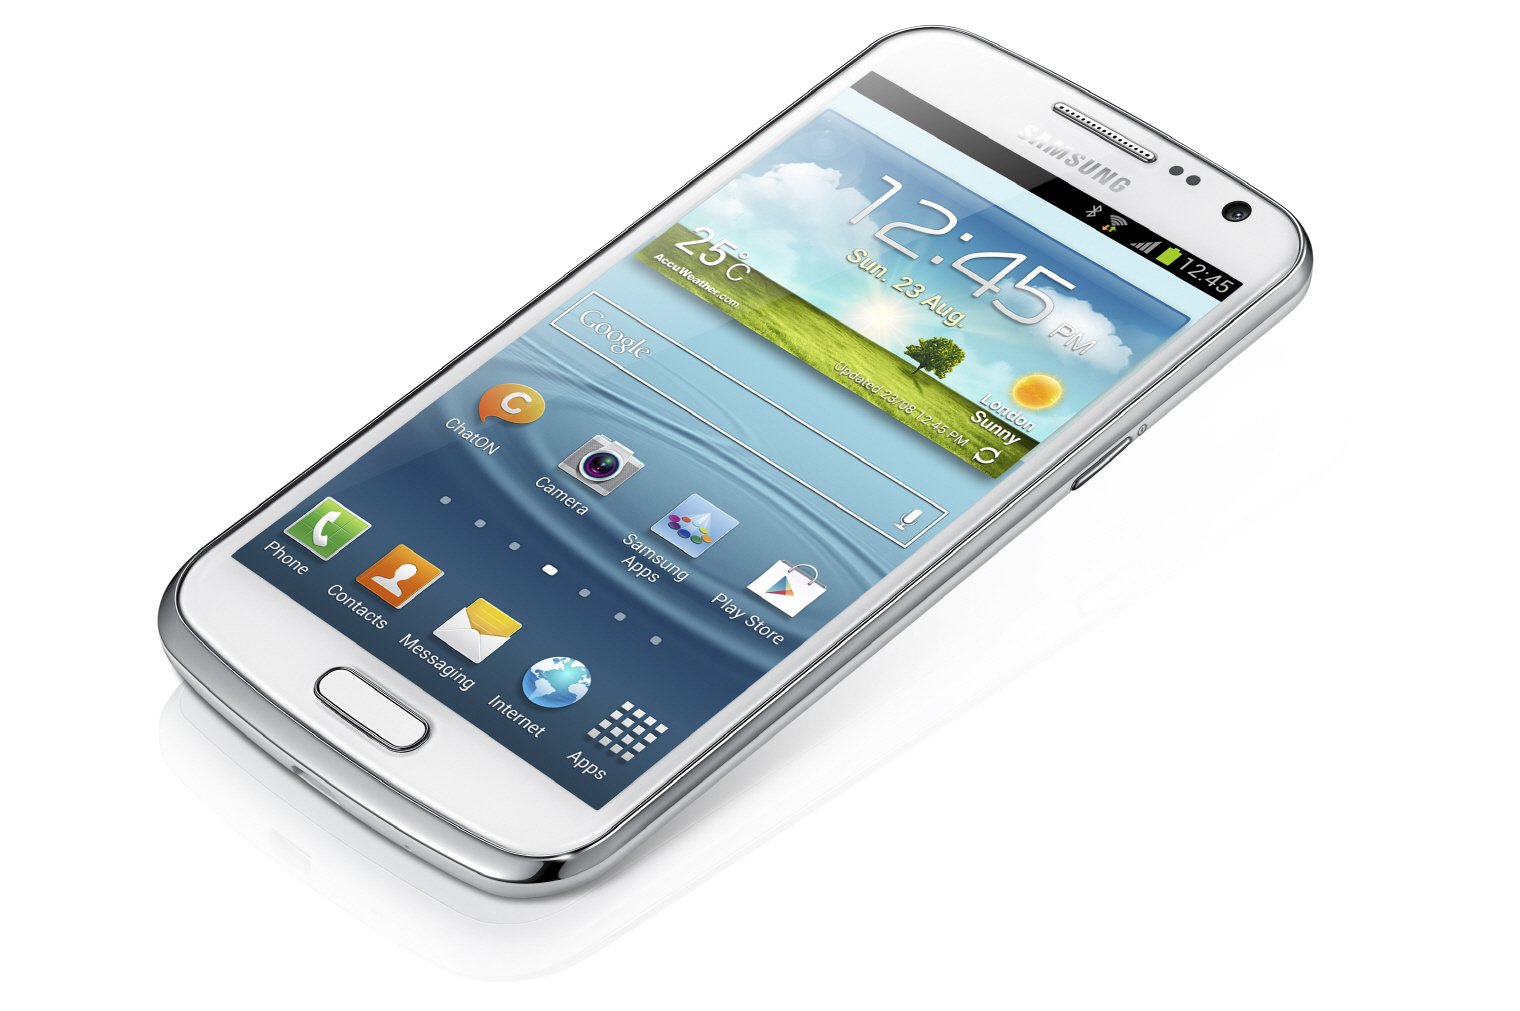 Samsung Galaxy Gps